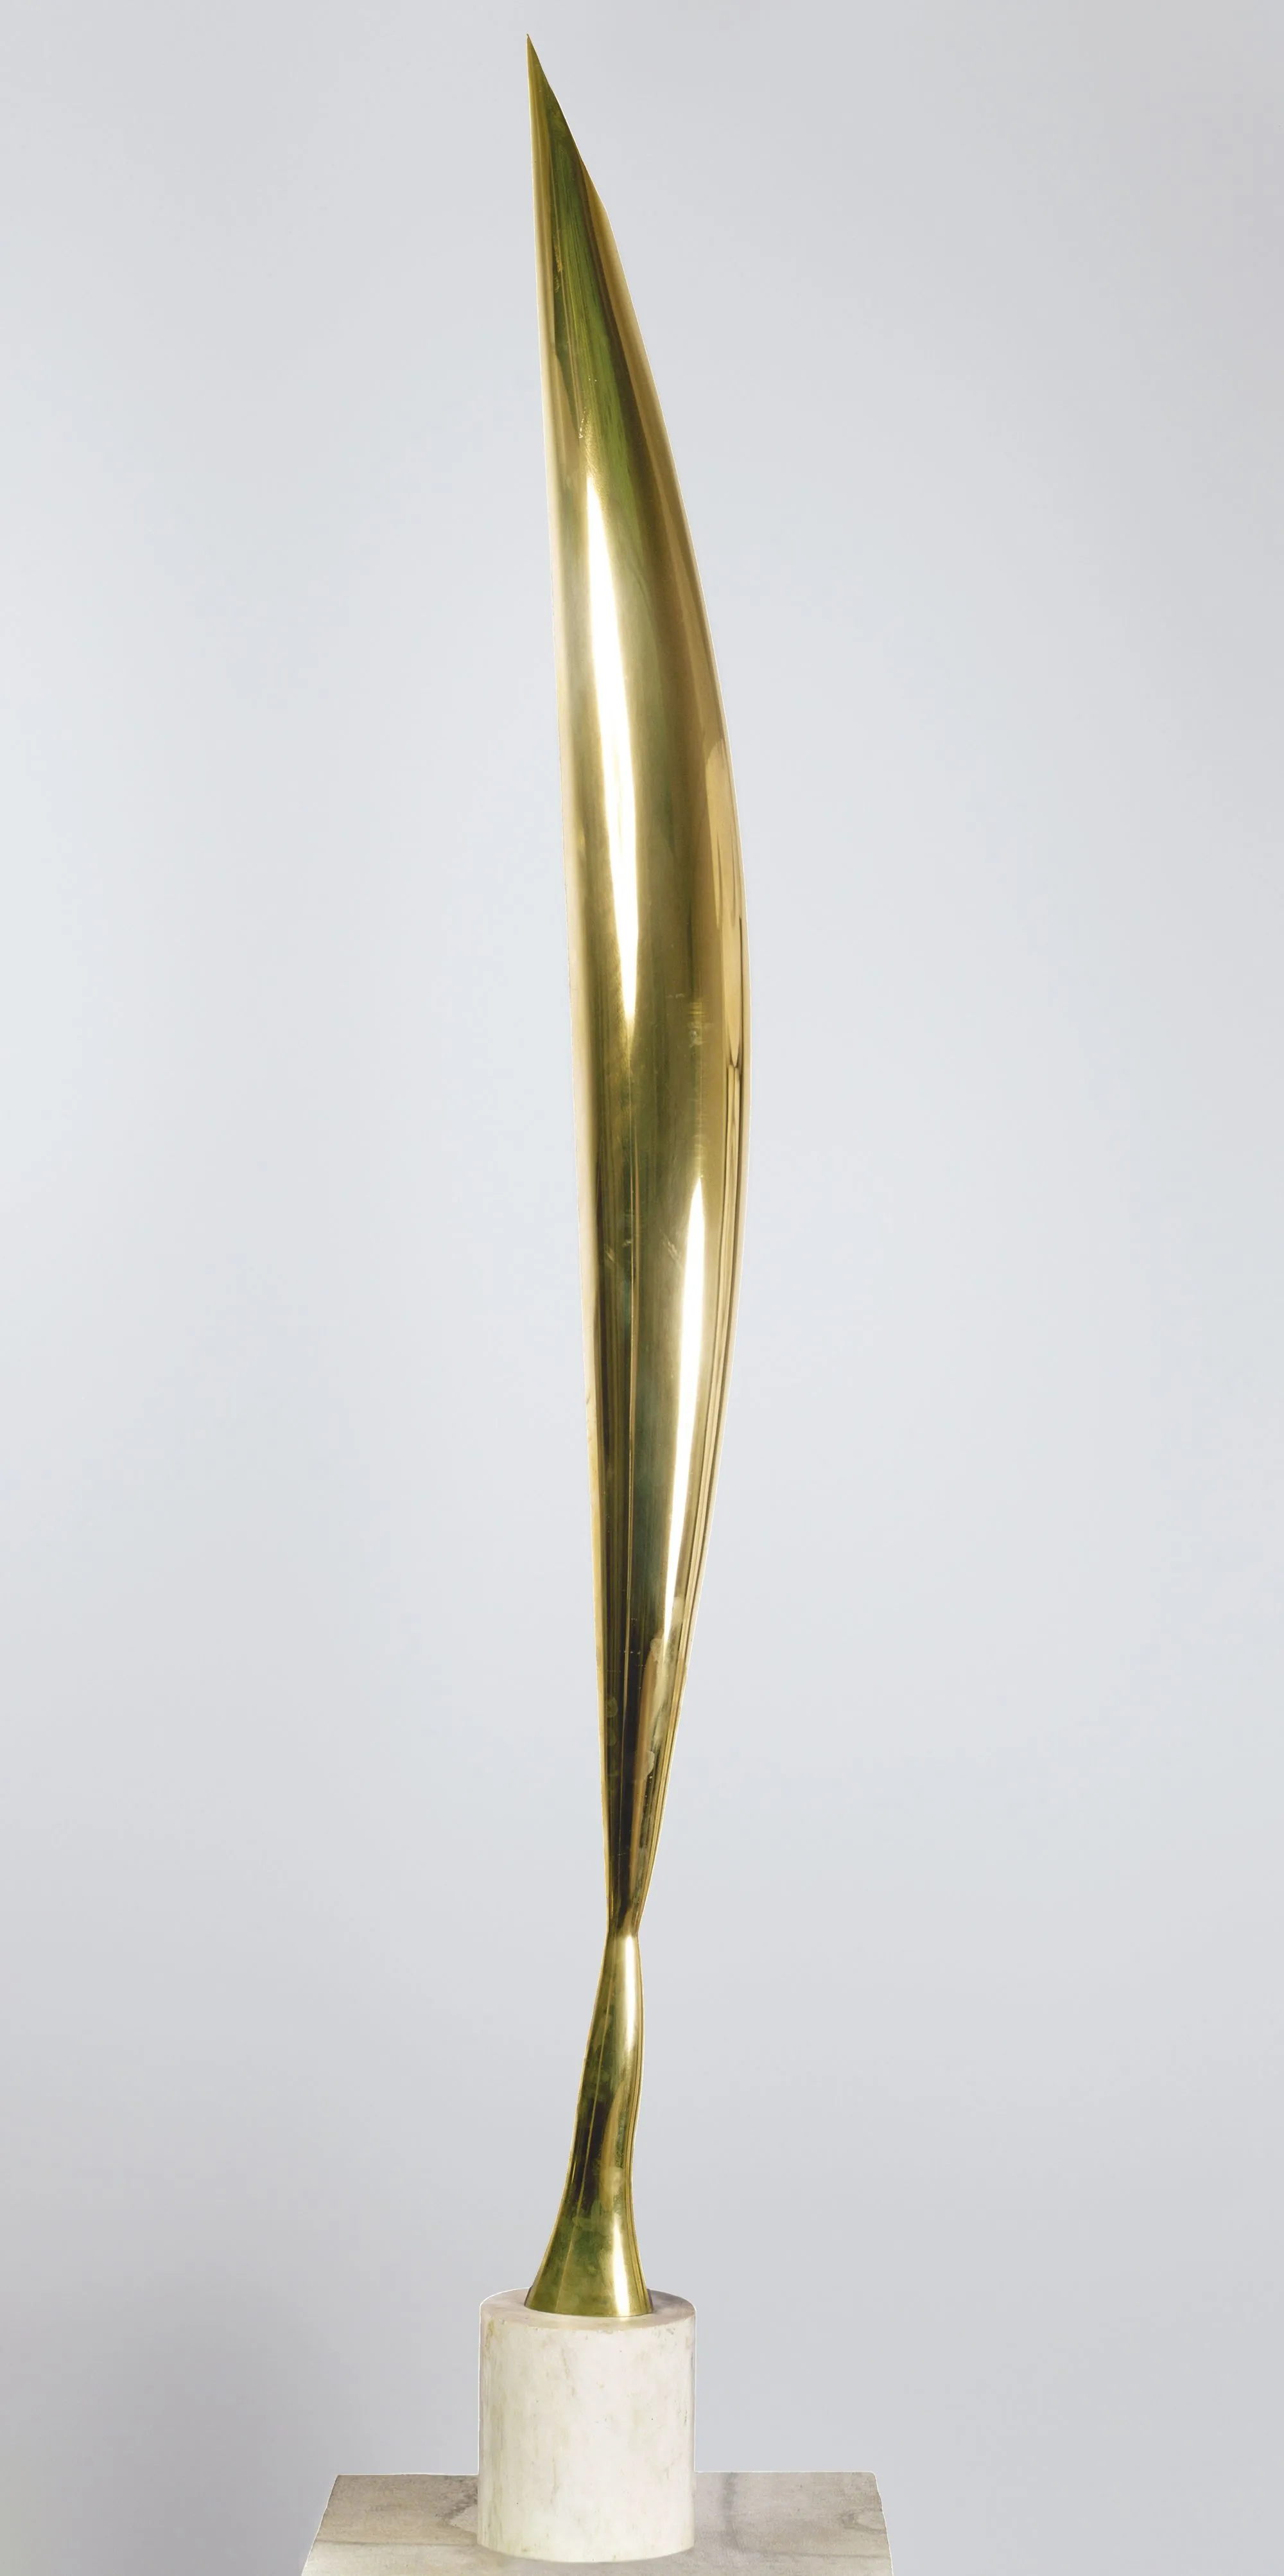 Constantin Brancusi, L'Oiseau dans l'espace, 1924, bronze poli, musée d'art de Philadelphie, États-Unis.